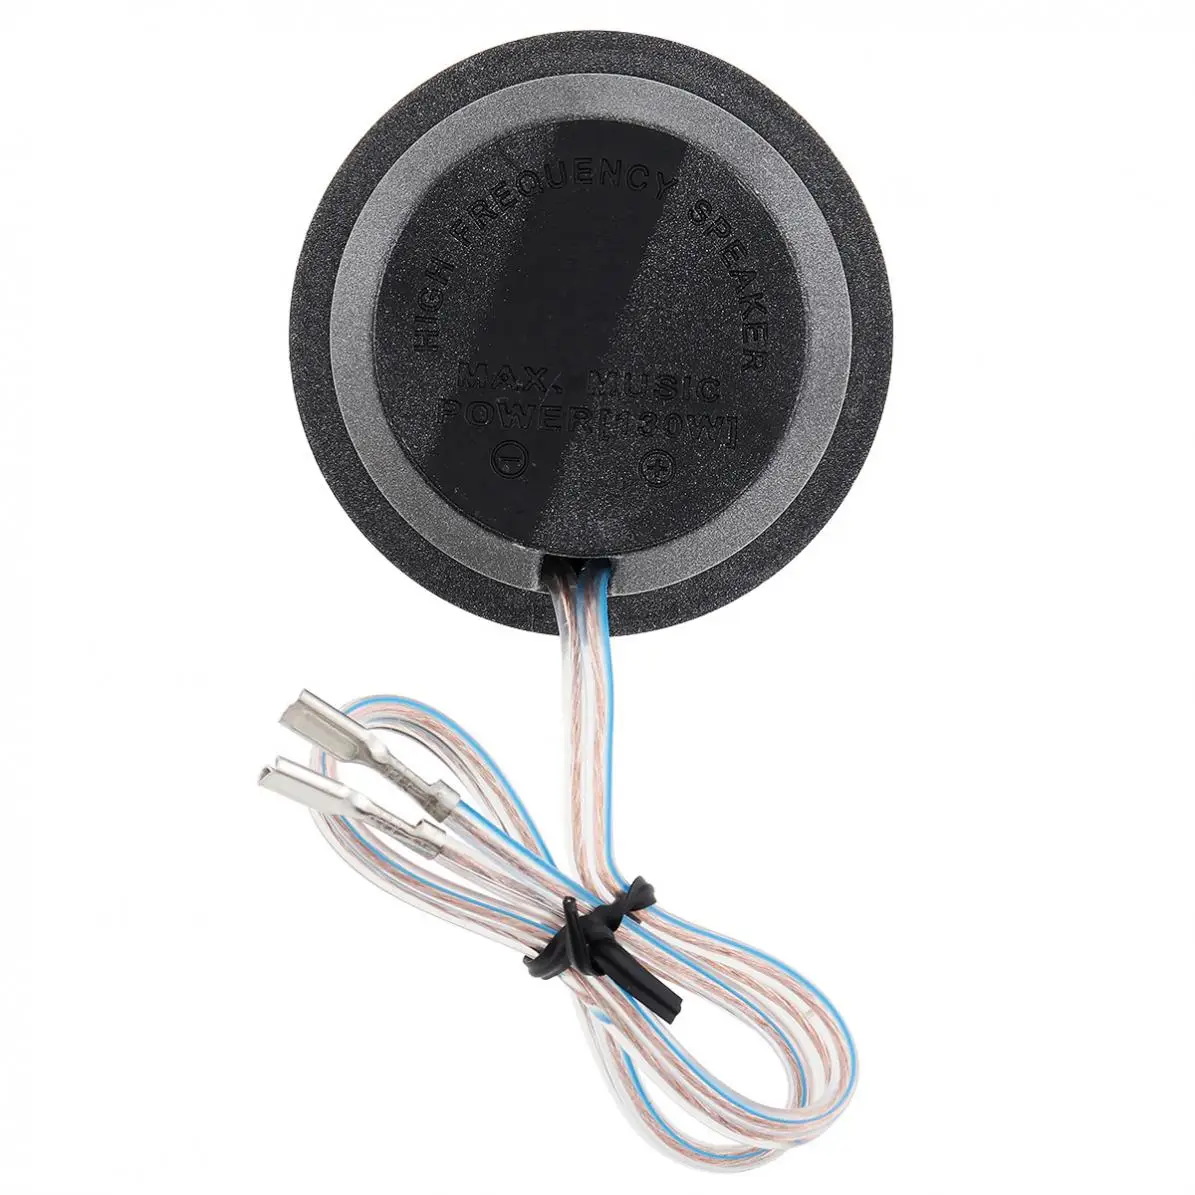 2 шт. 150 Вт 12 В высокоэффективные мини-купольные автомобильные твитеры, высокочастотный Soundbox громкоговоритель для автомобильных аудиосистем